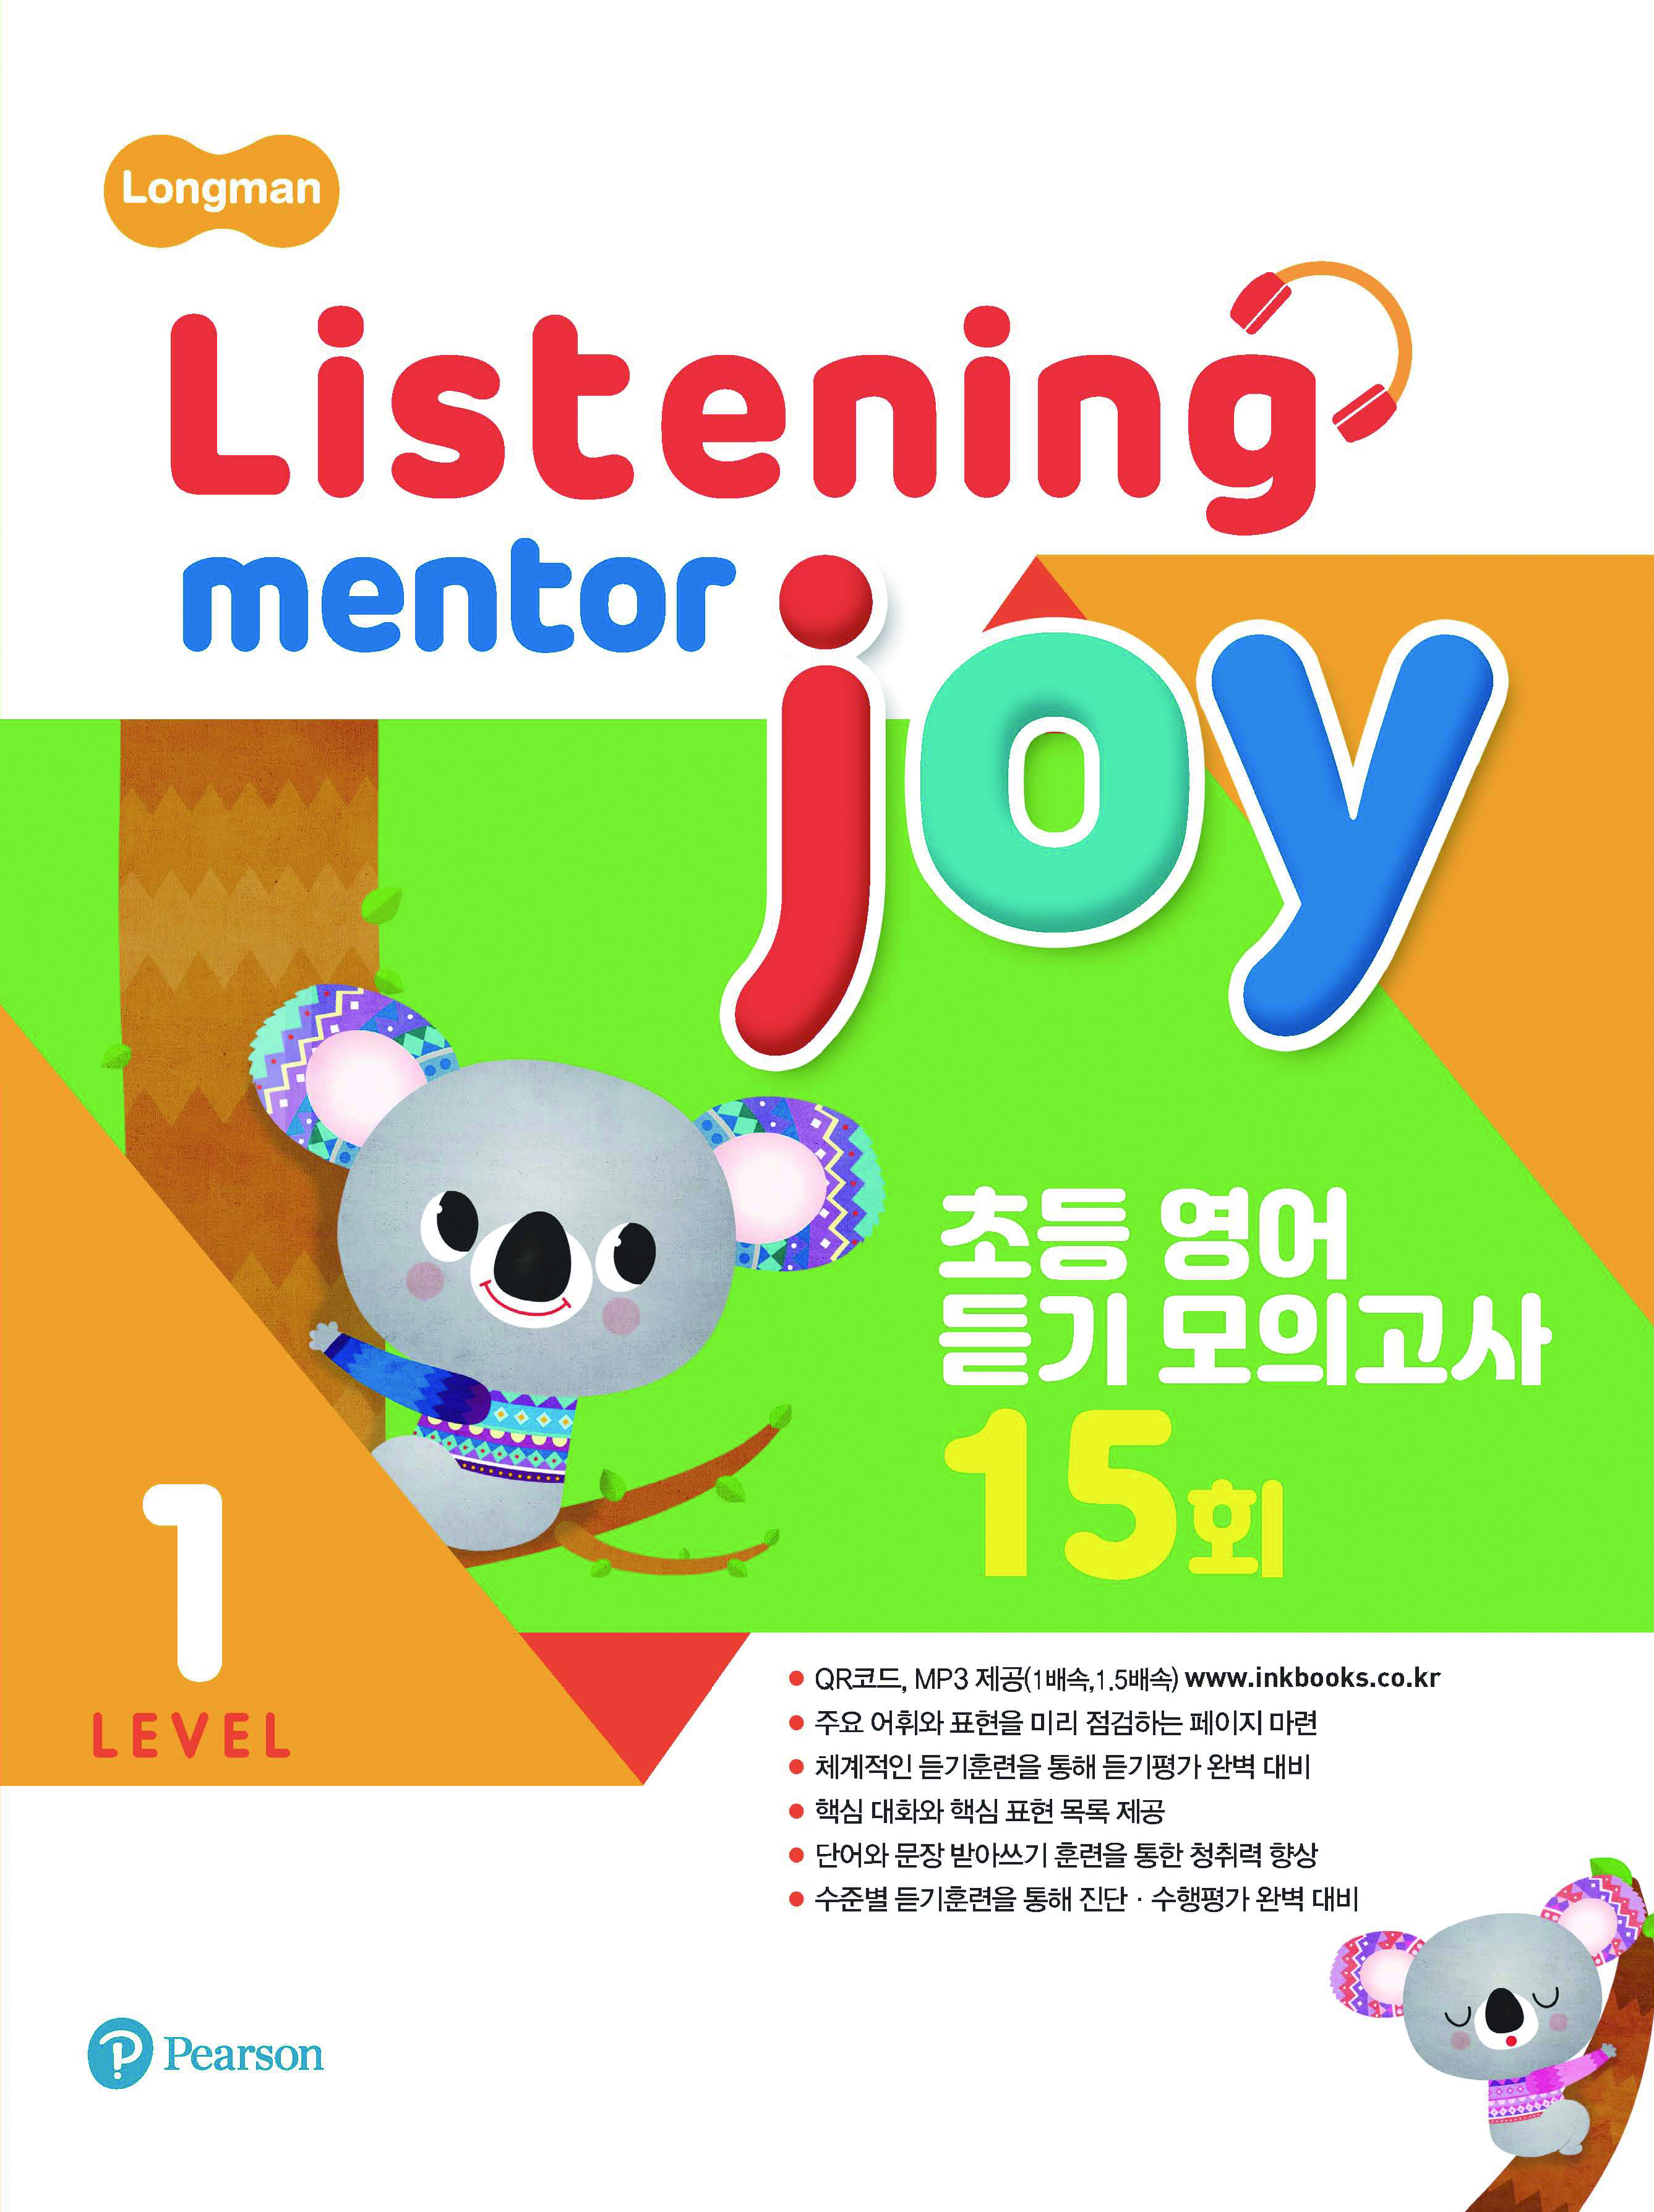 Listening Mentor Joy 1